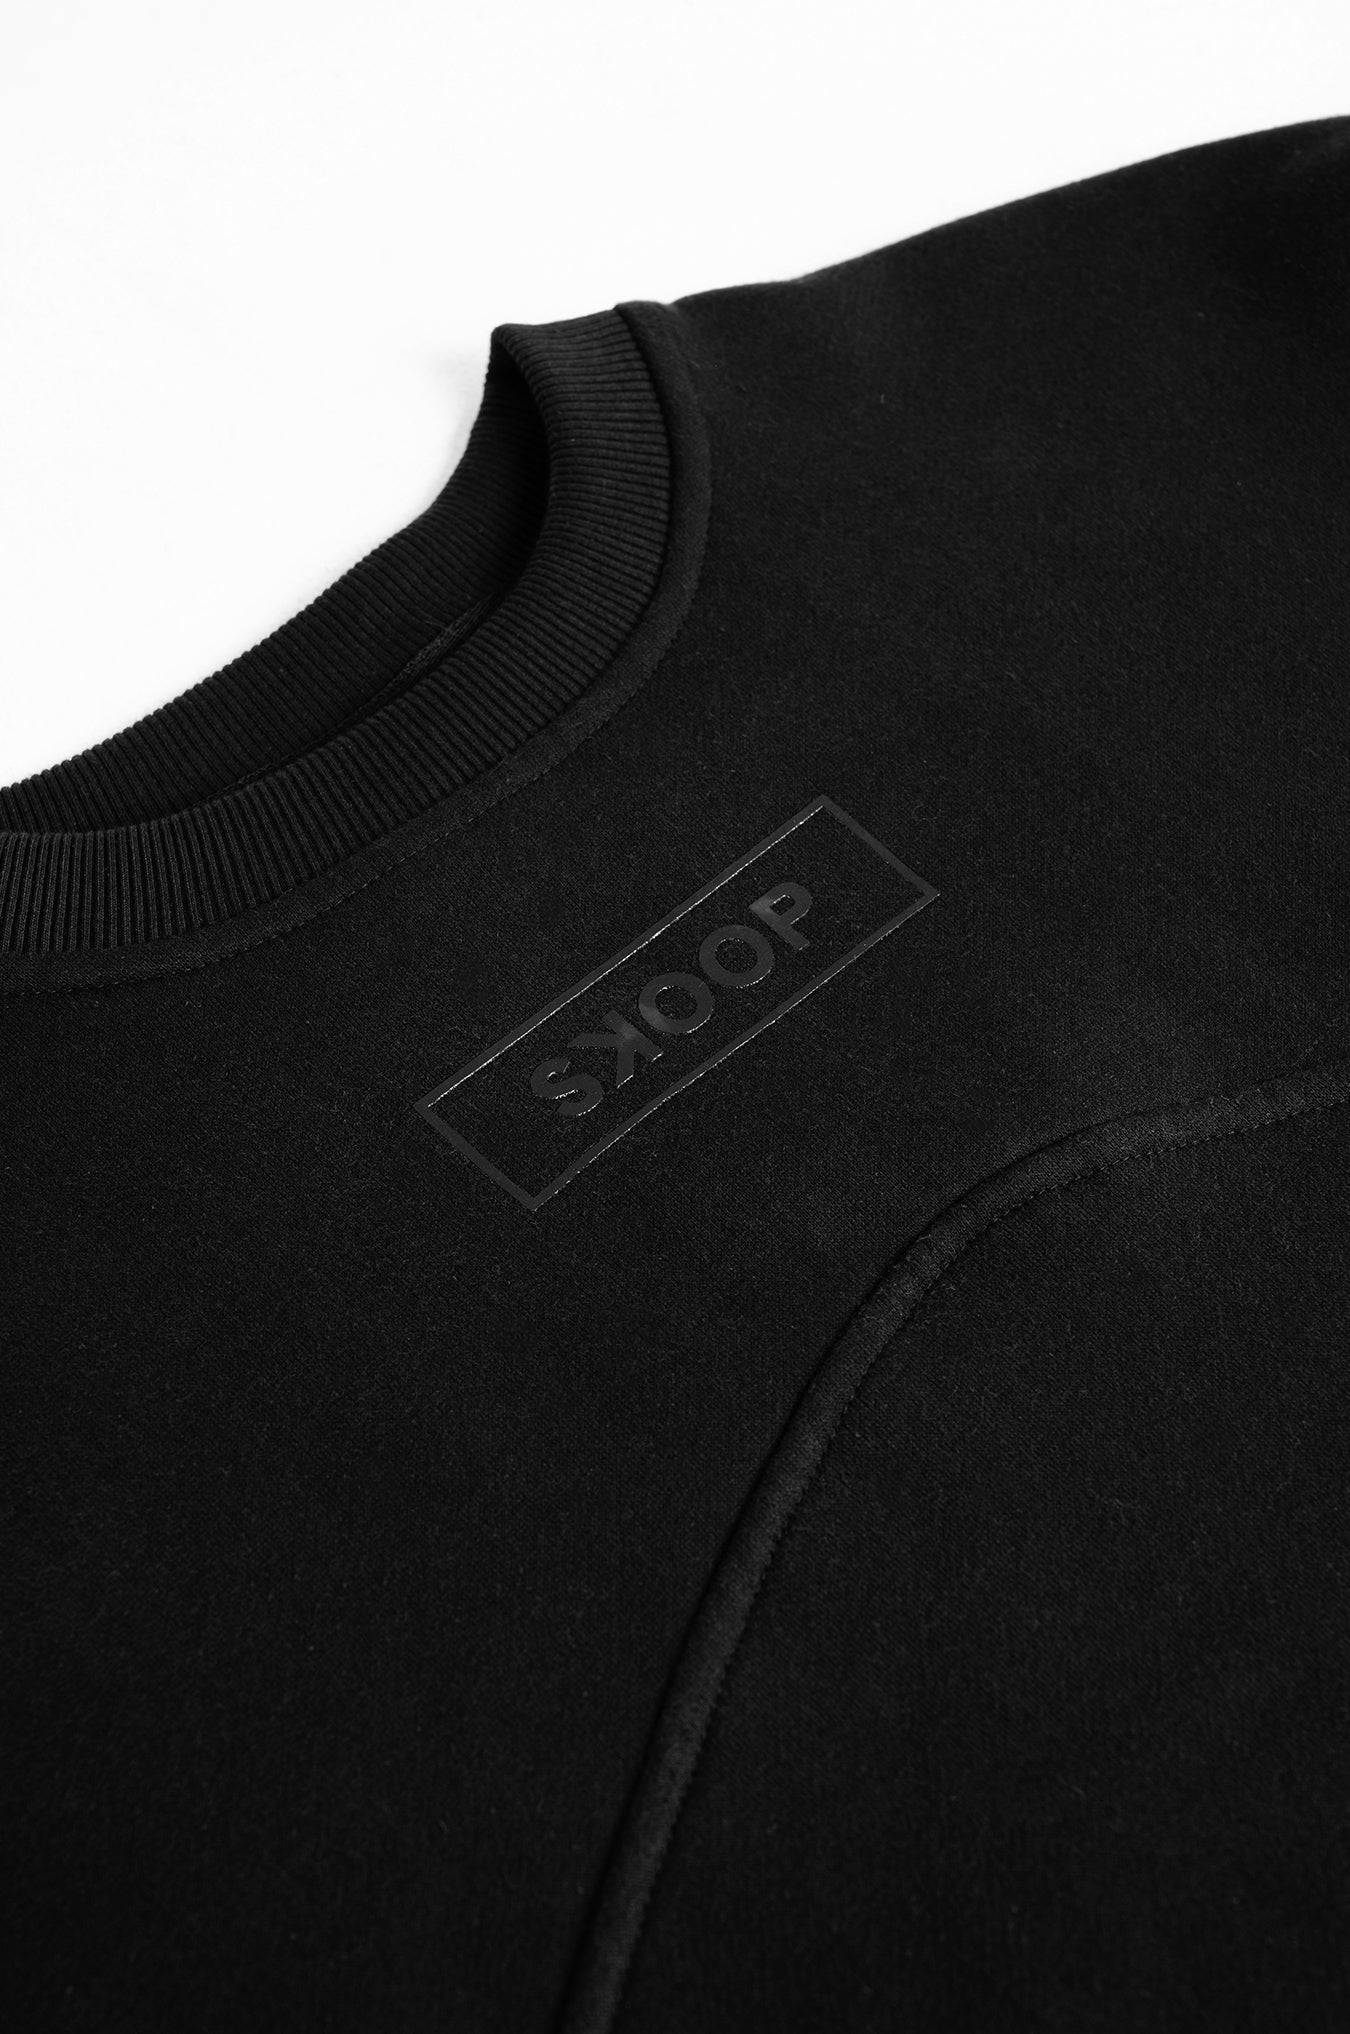 SKOOP® Nero Patchwork Sweater Onyx - SKOOP Kommunity